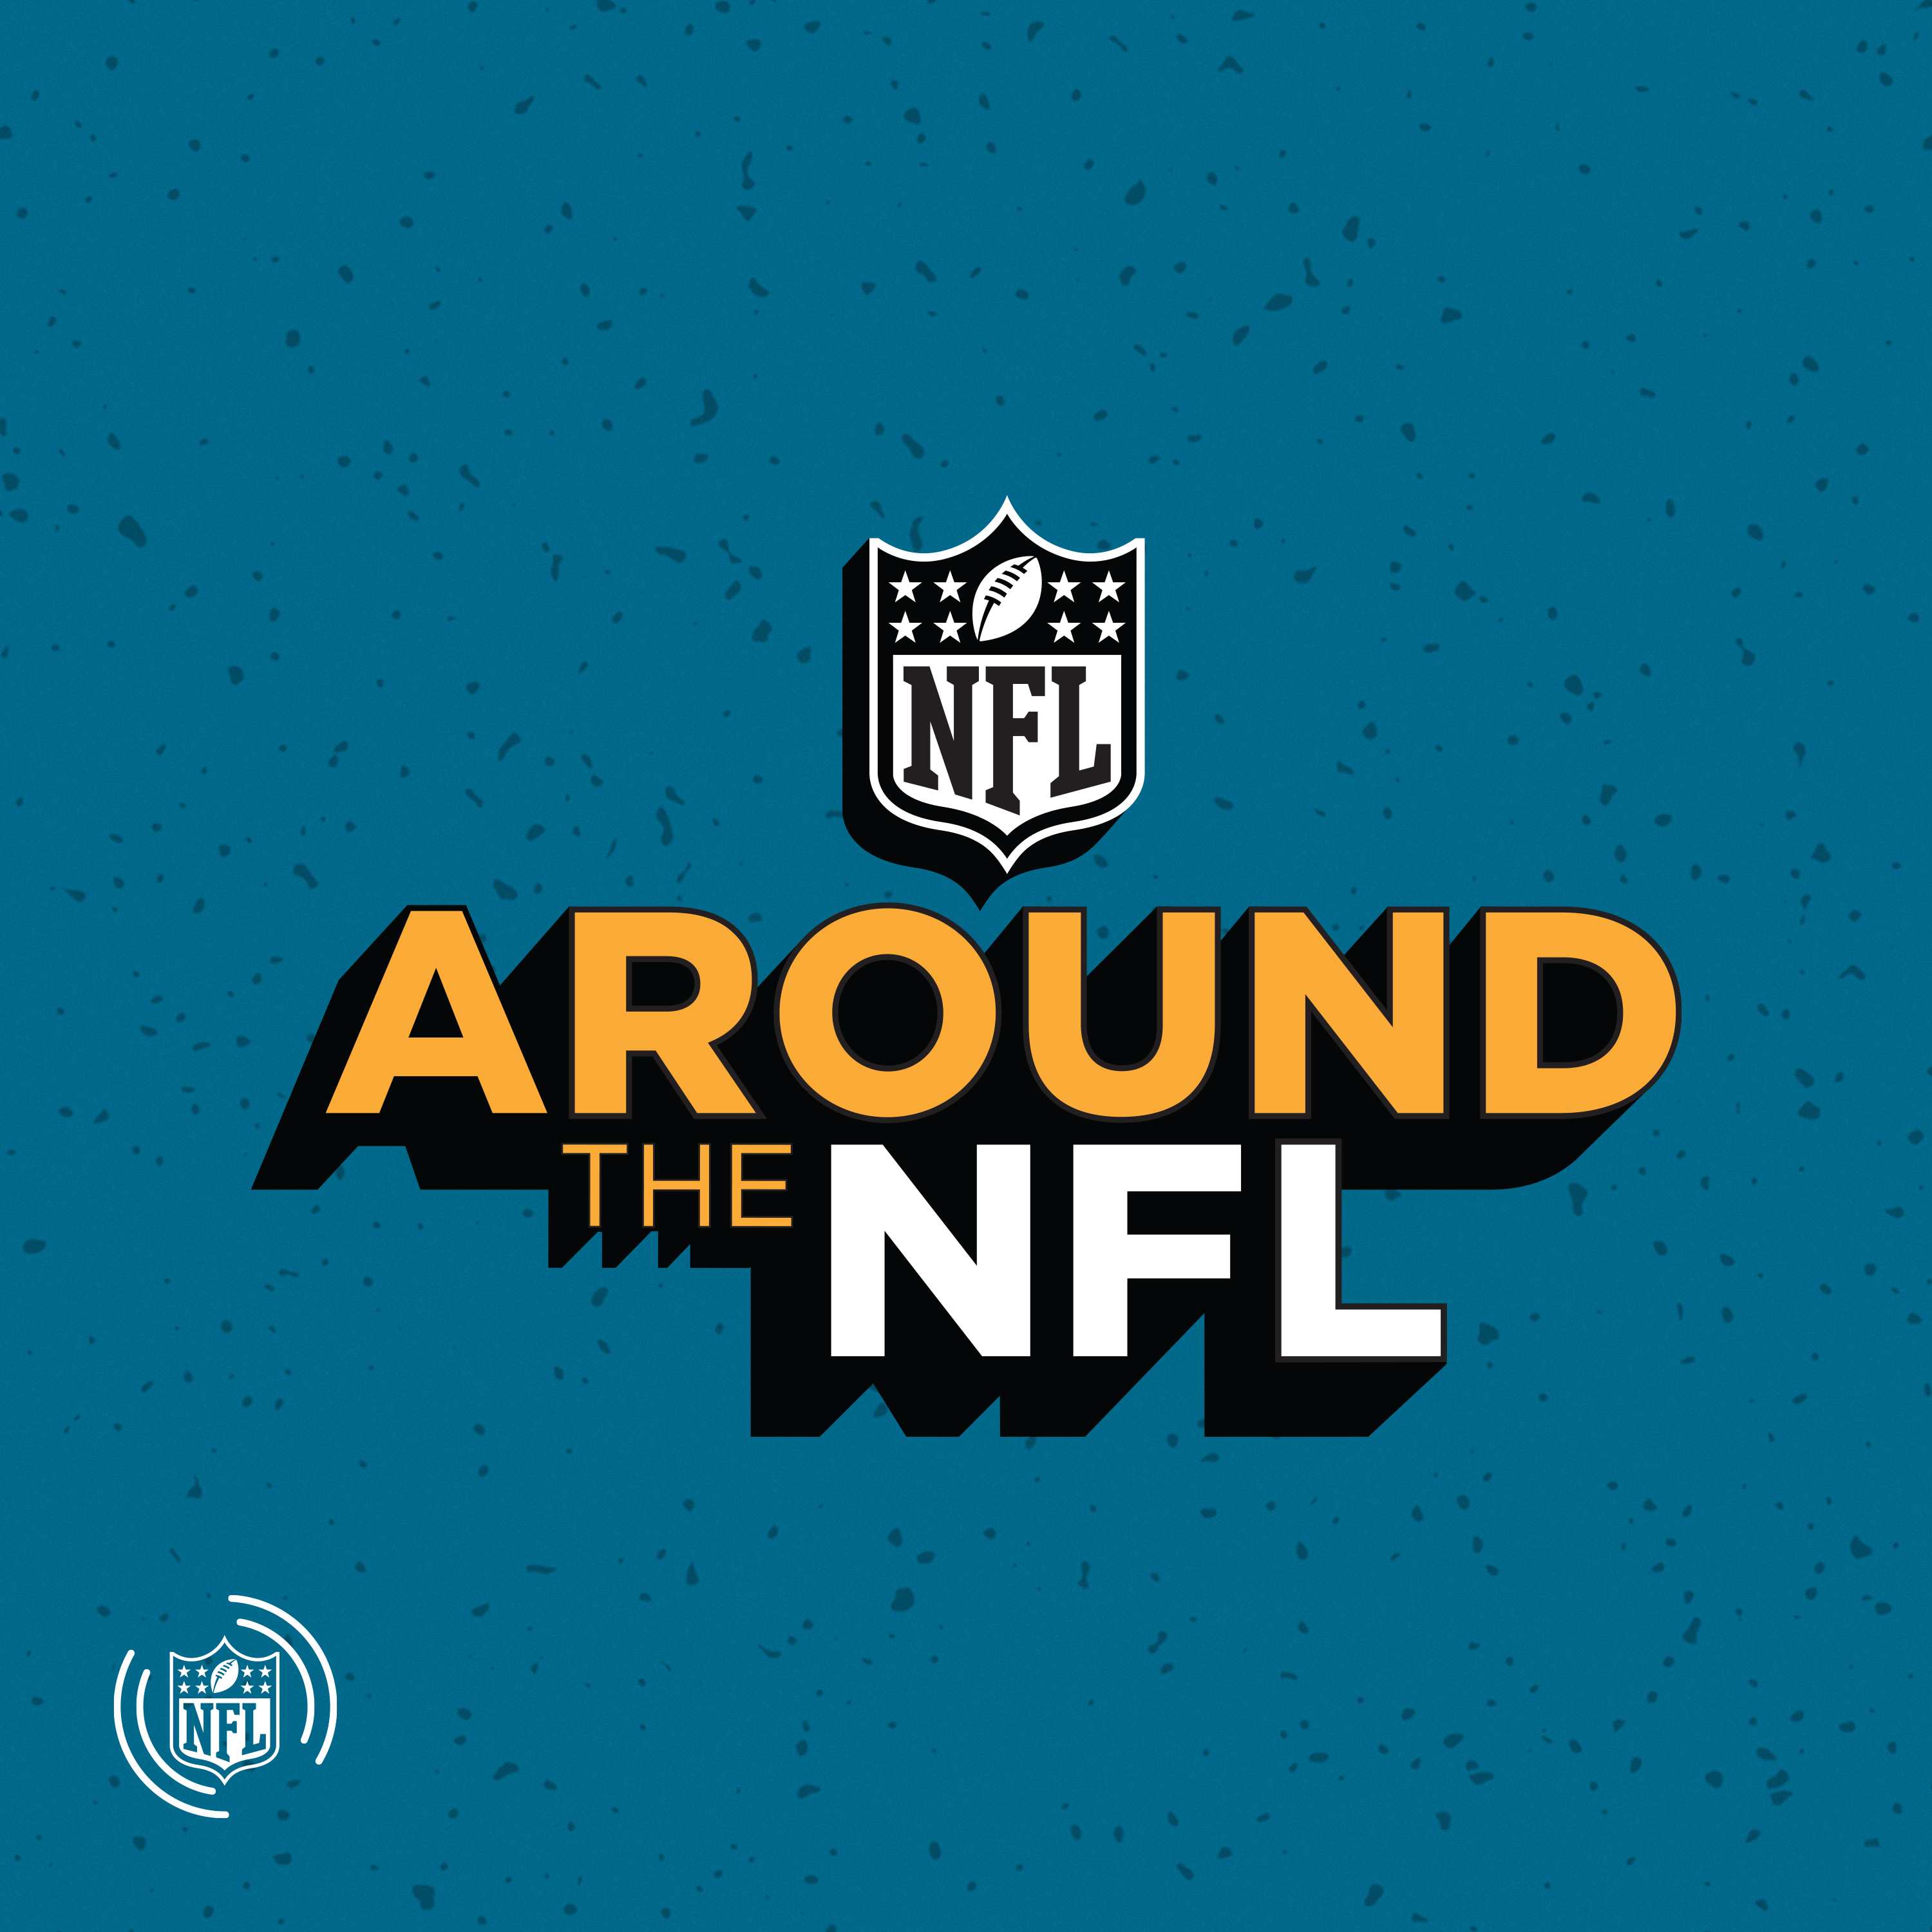 NFL ATL: Week 16 preview